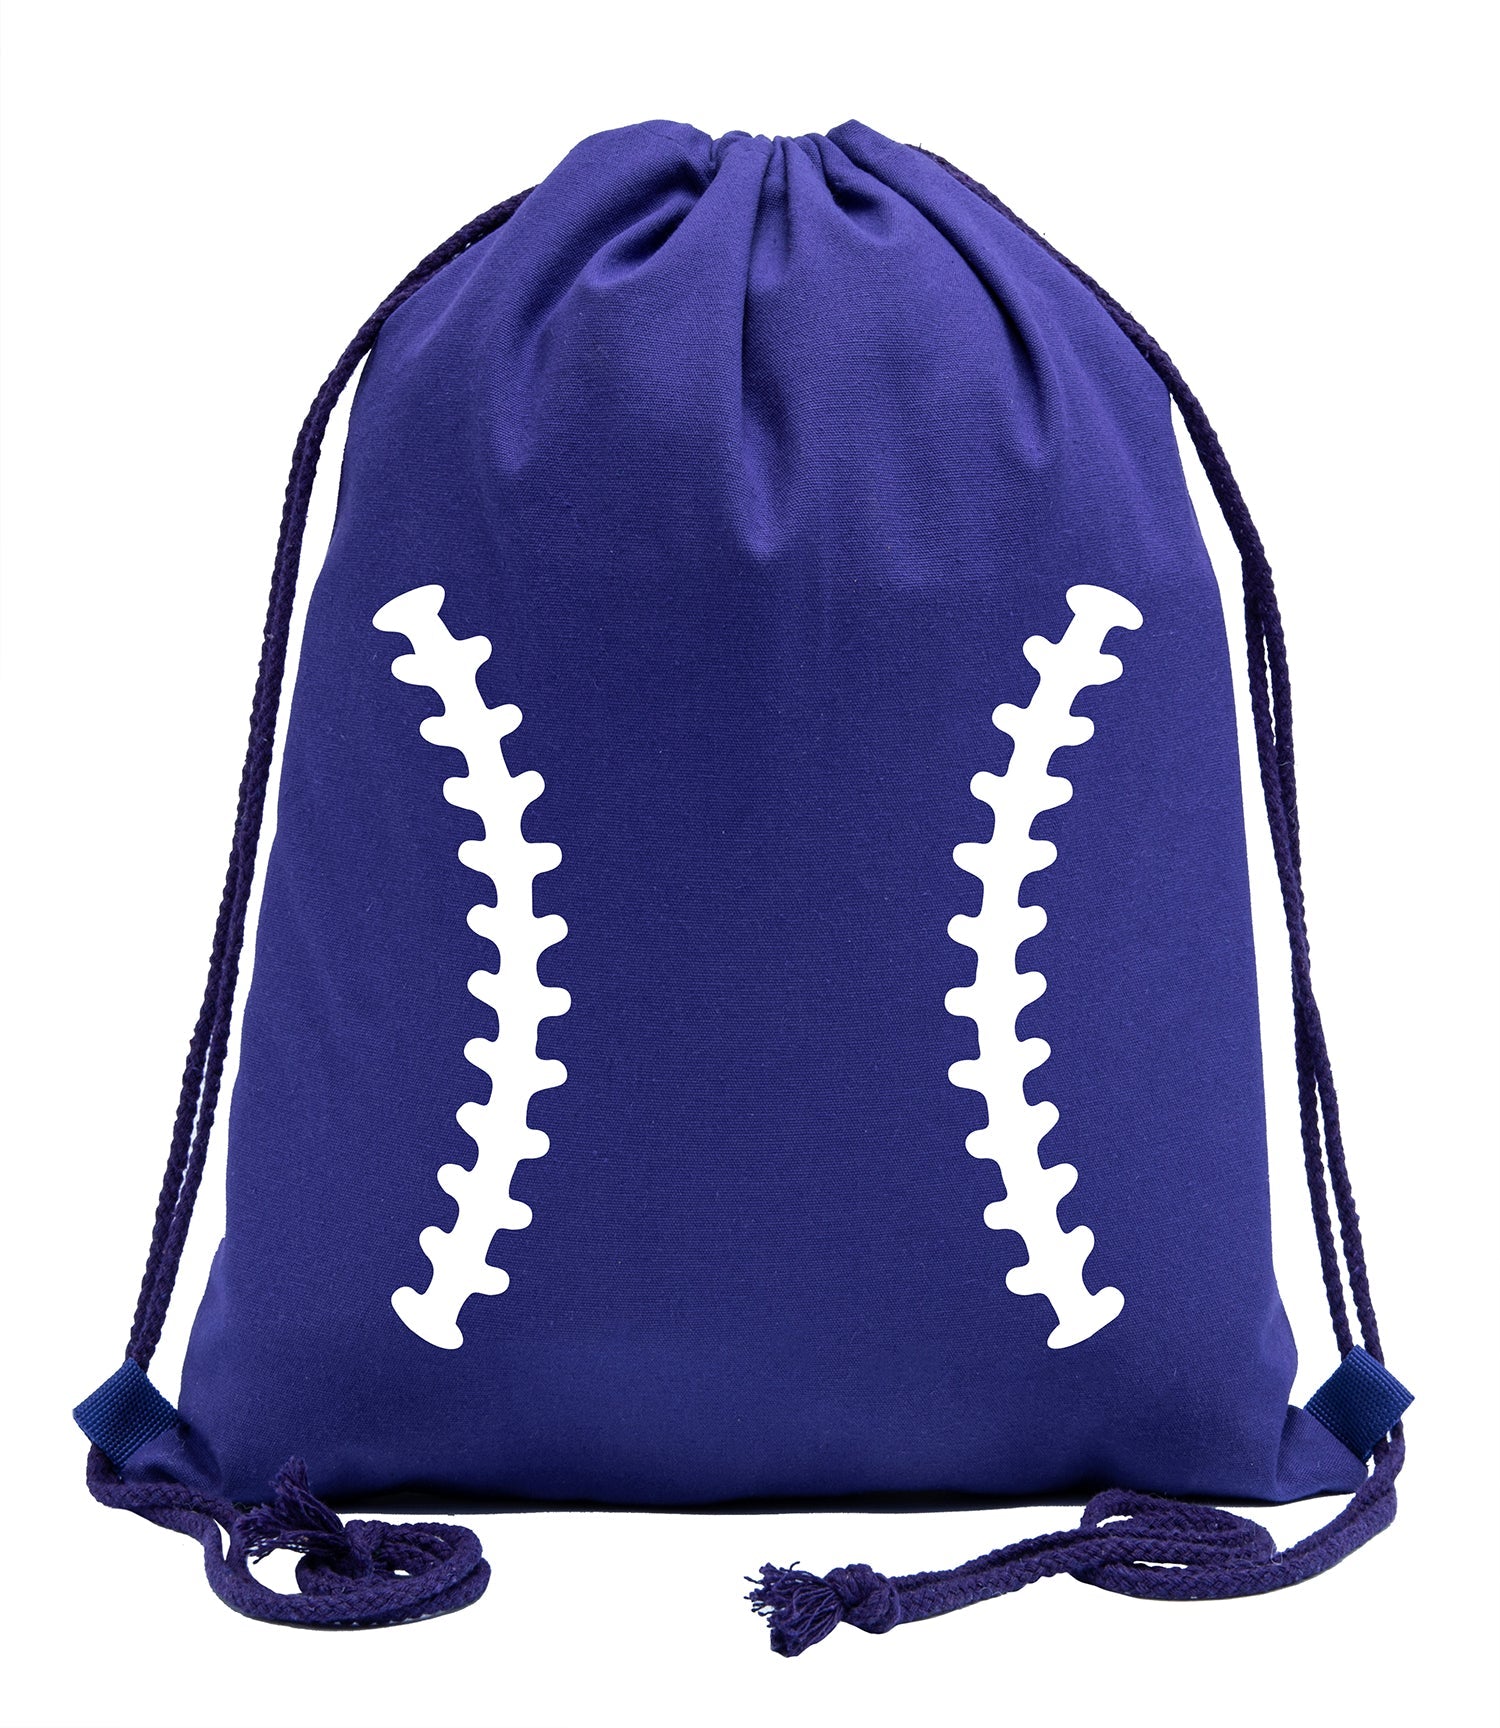 Baseball Laces Cotton Drawstring Bag